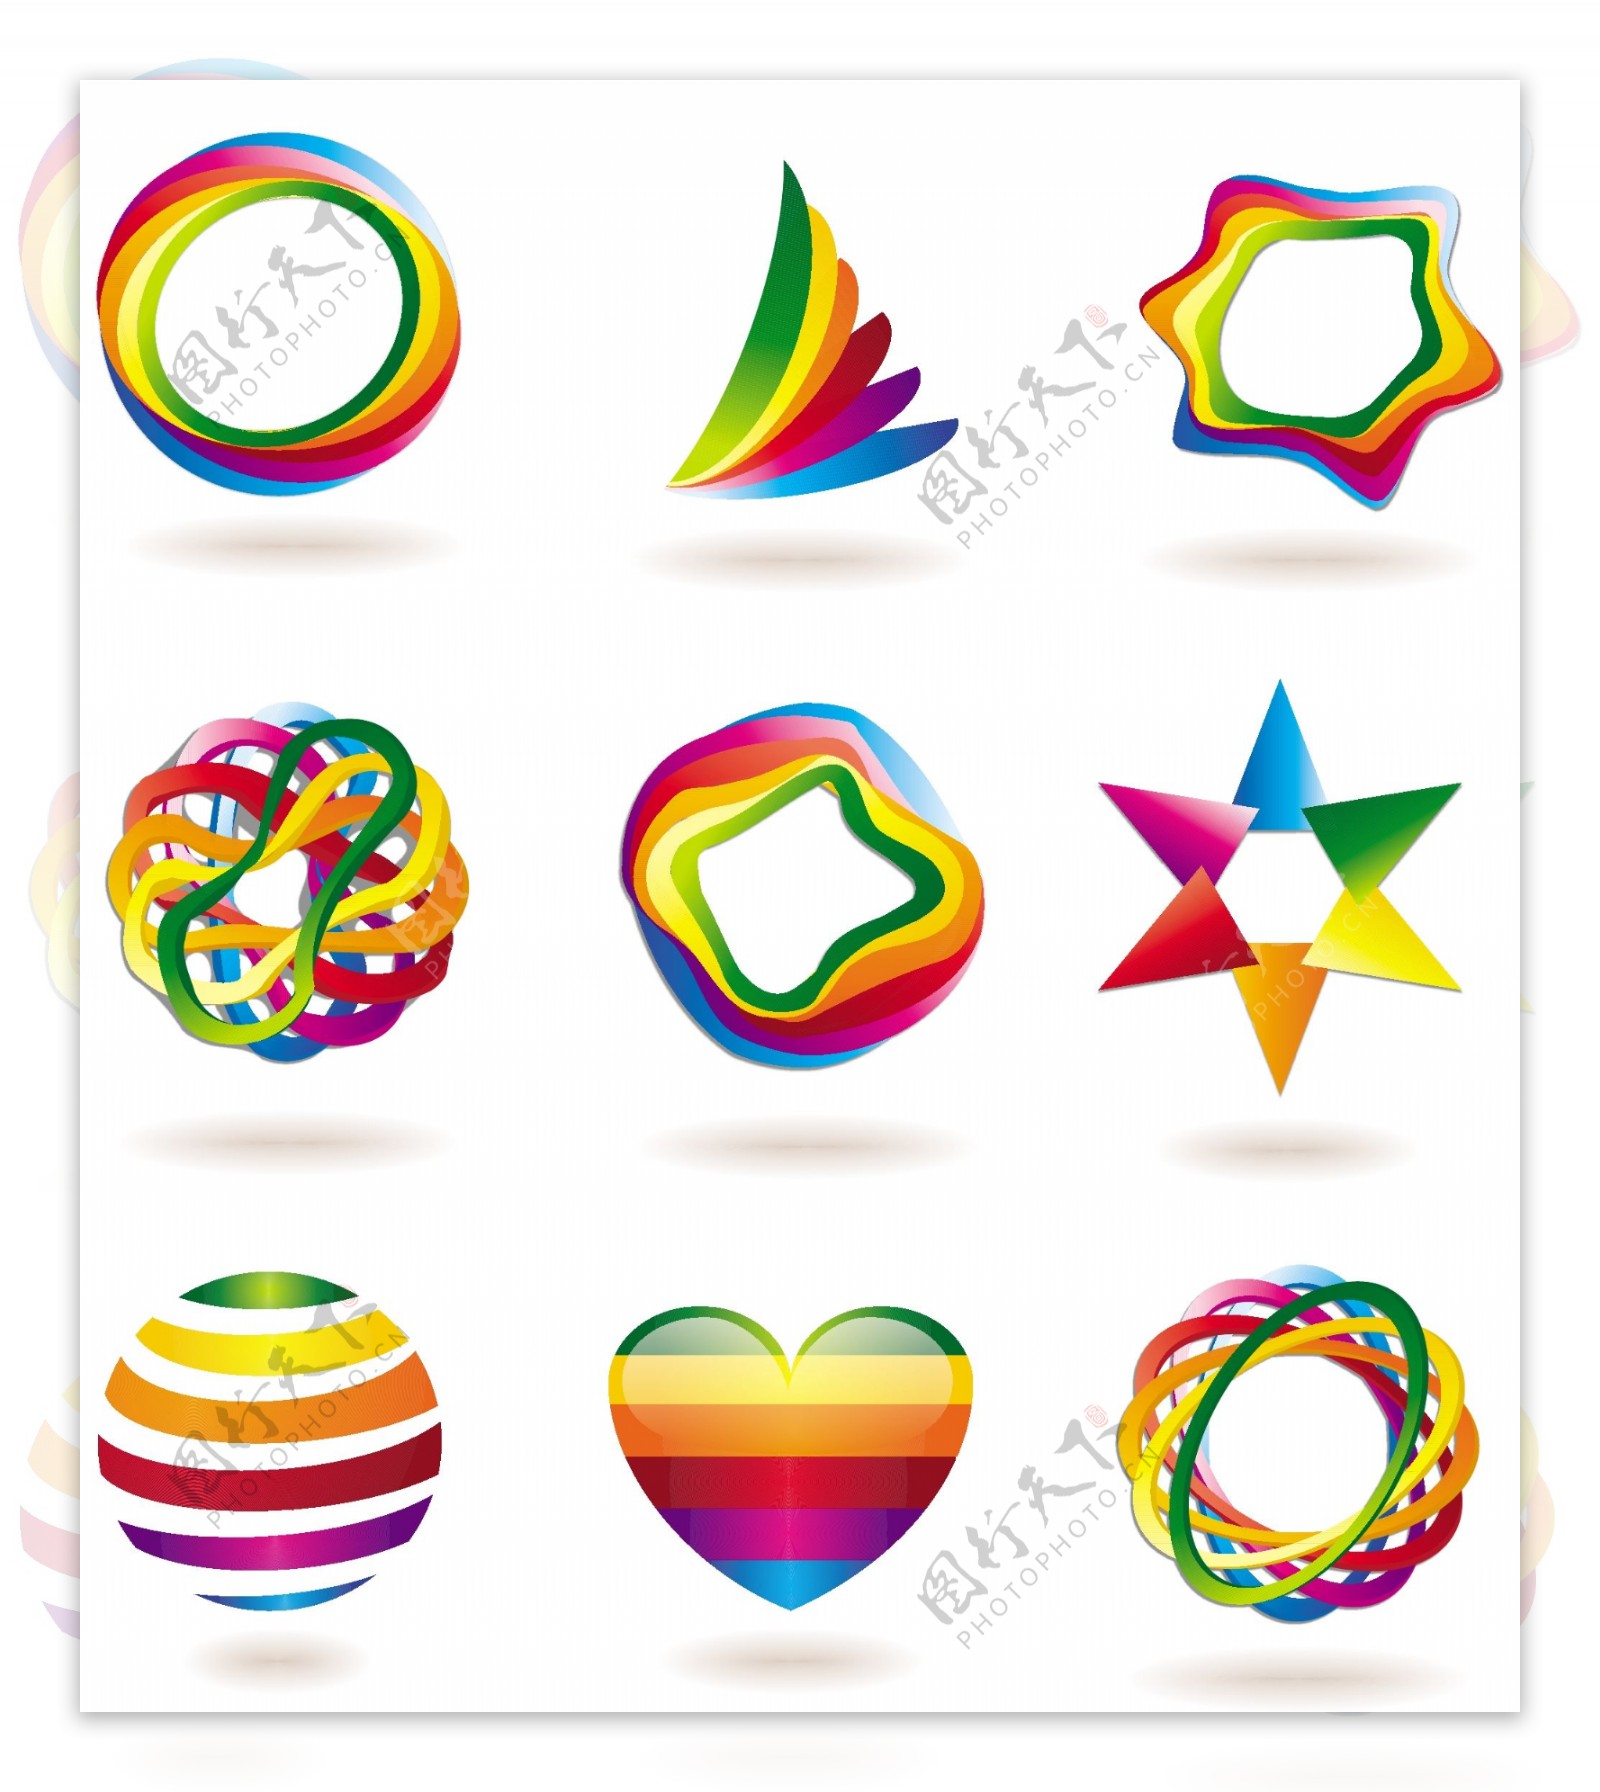 彩虹色彩立体logo元素矢量素材